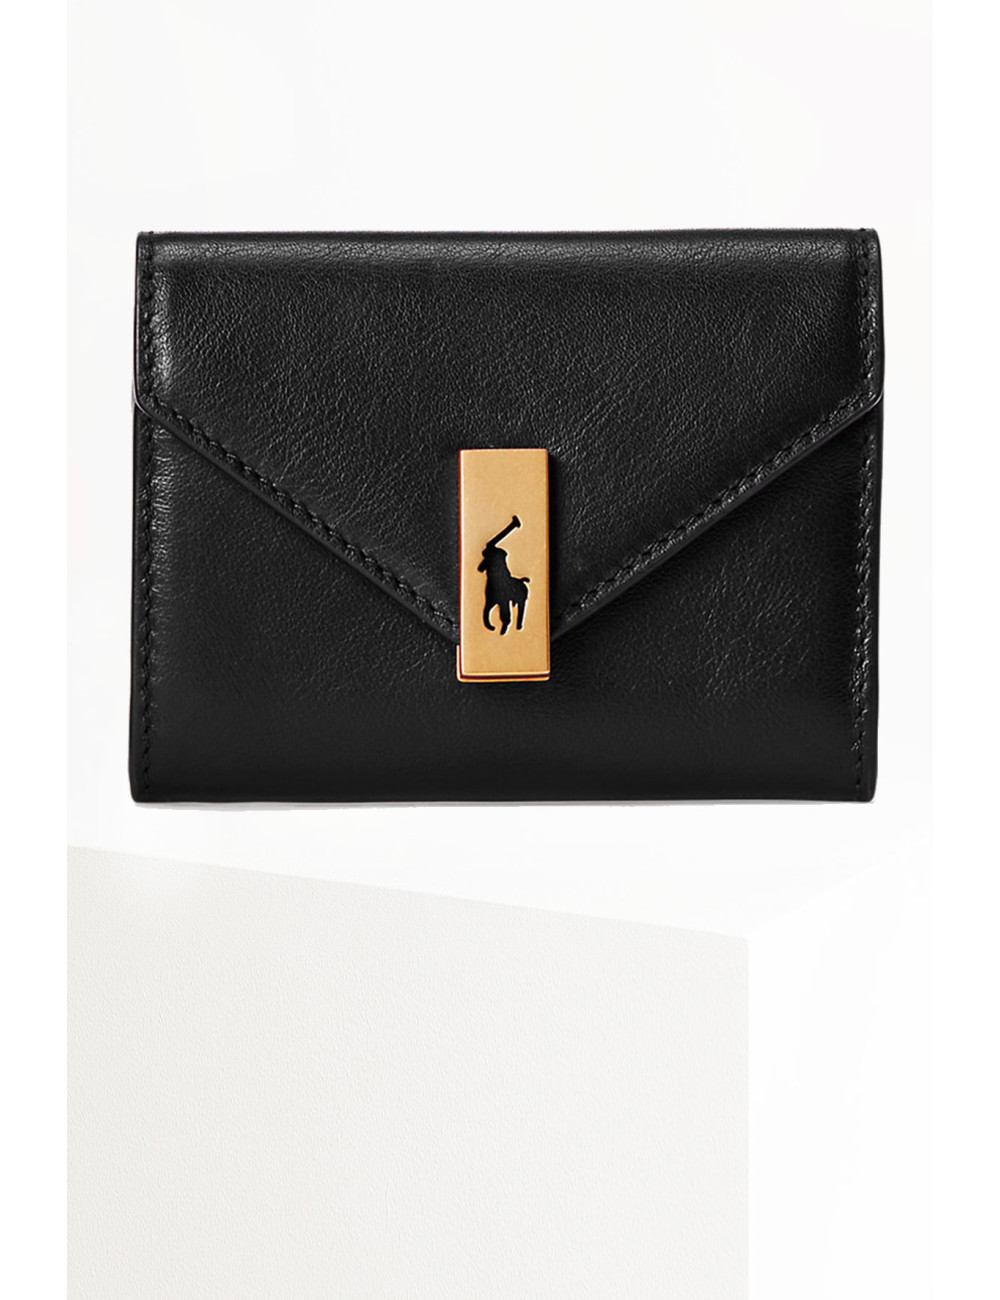 Polo black wallet - Polo - Ralph Lauren -  